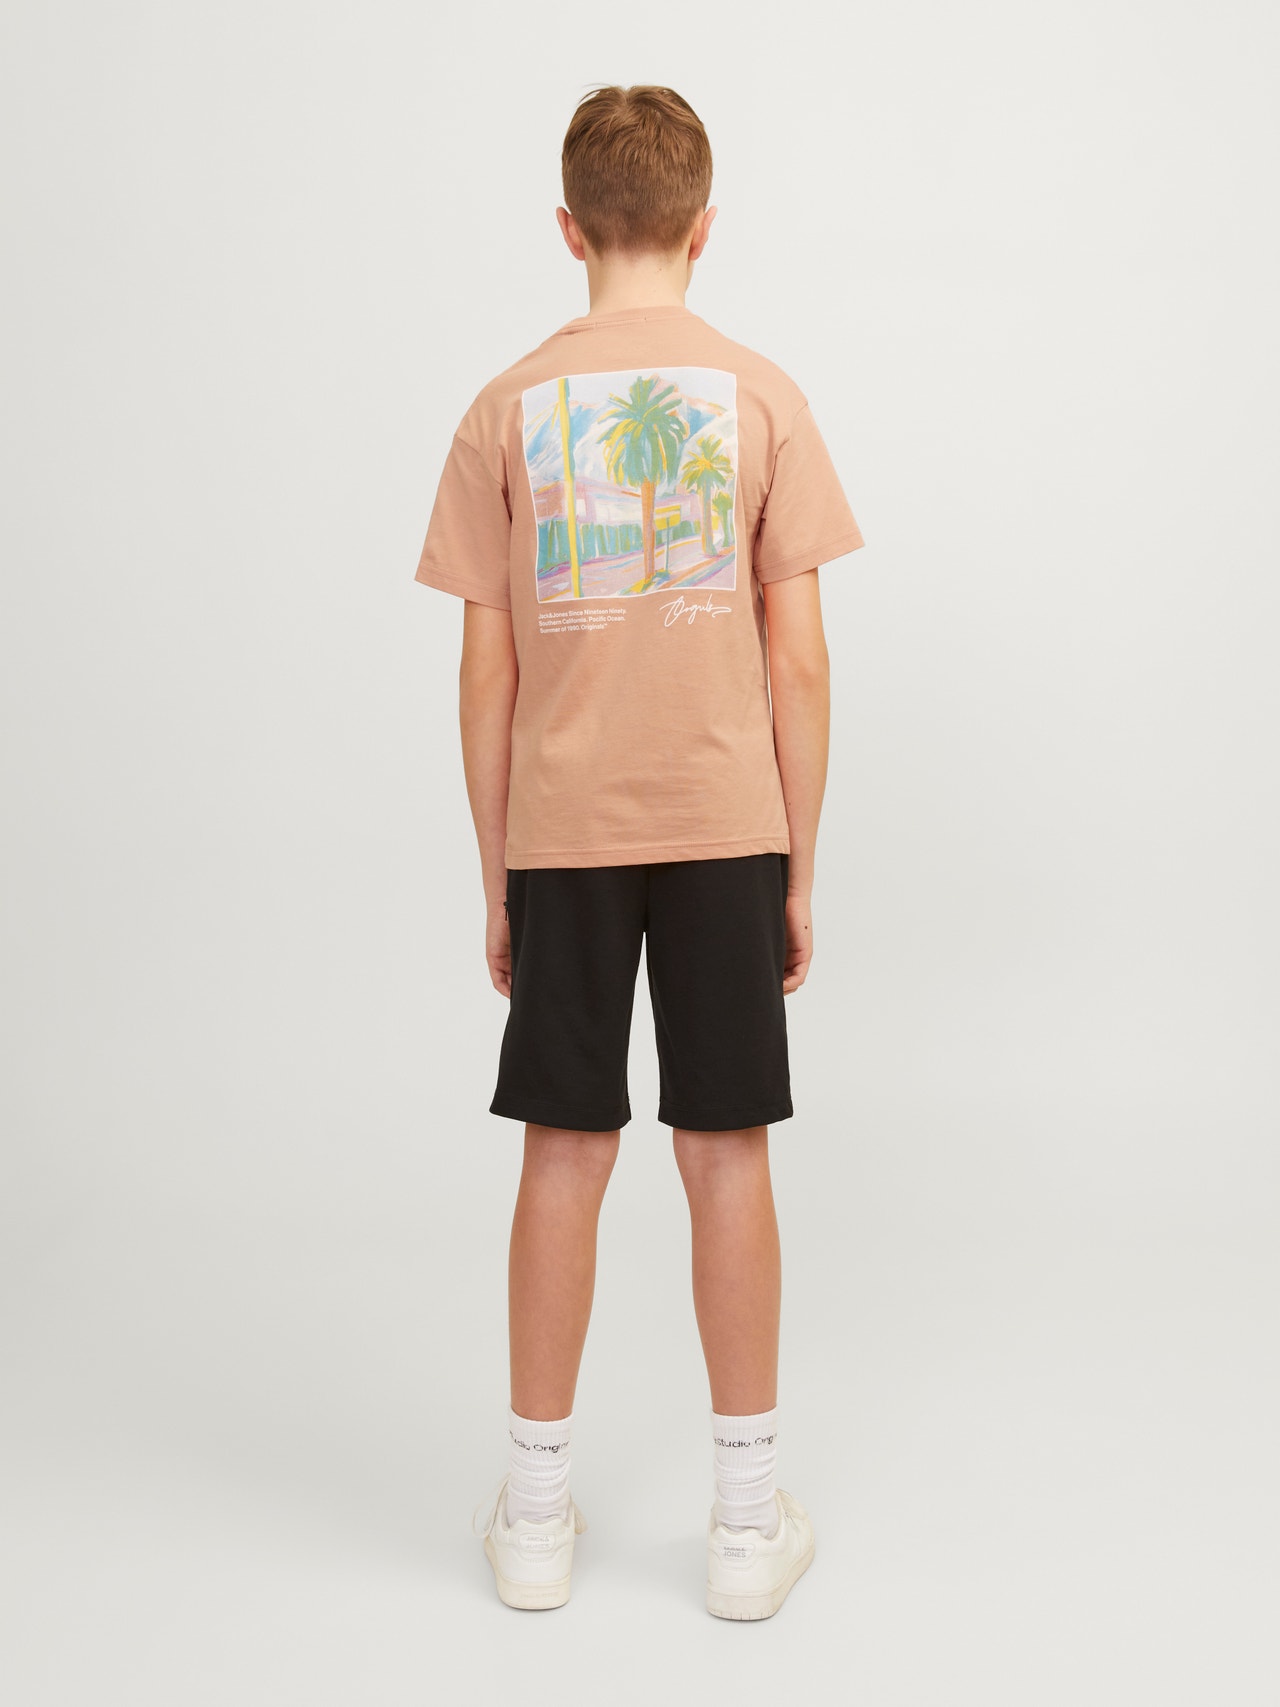 Jack & Jones T-shirt Stampato Per Bambino -Canyon Sunset - 12257134